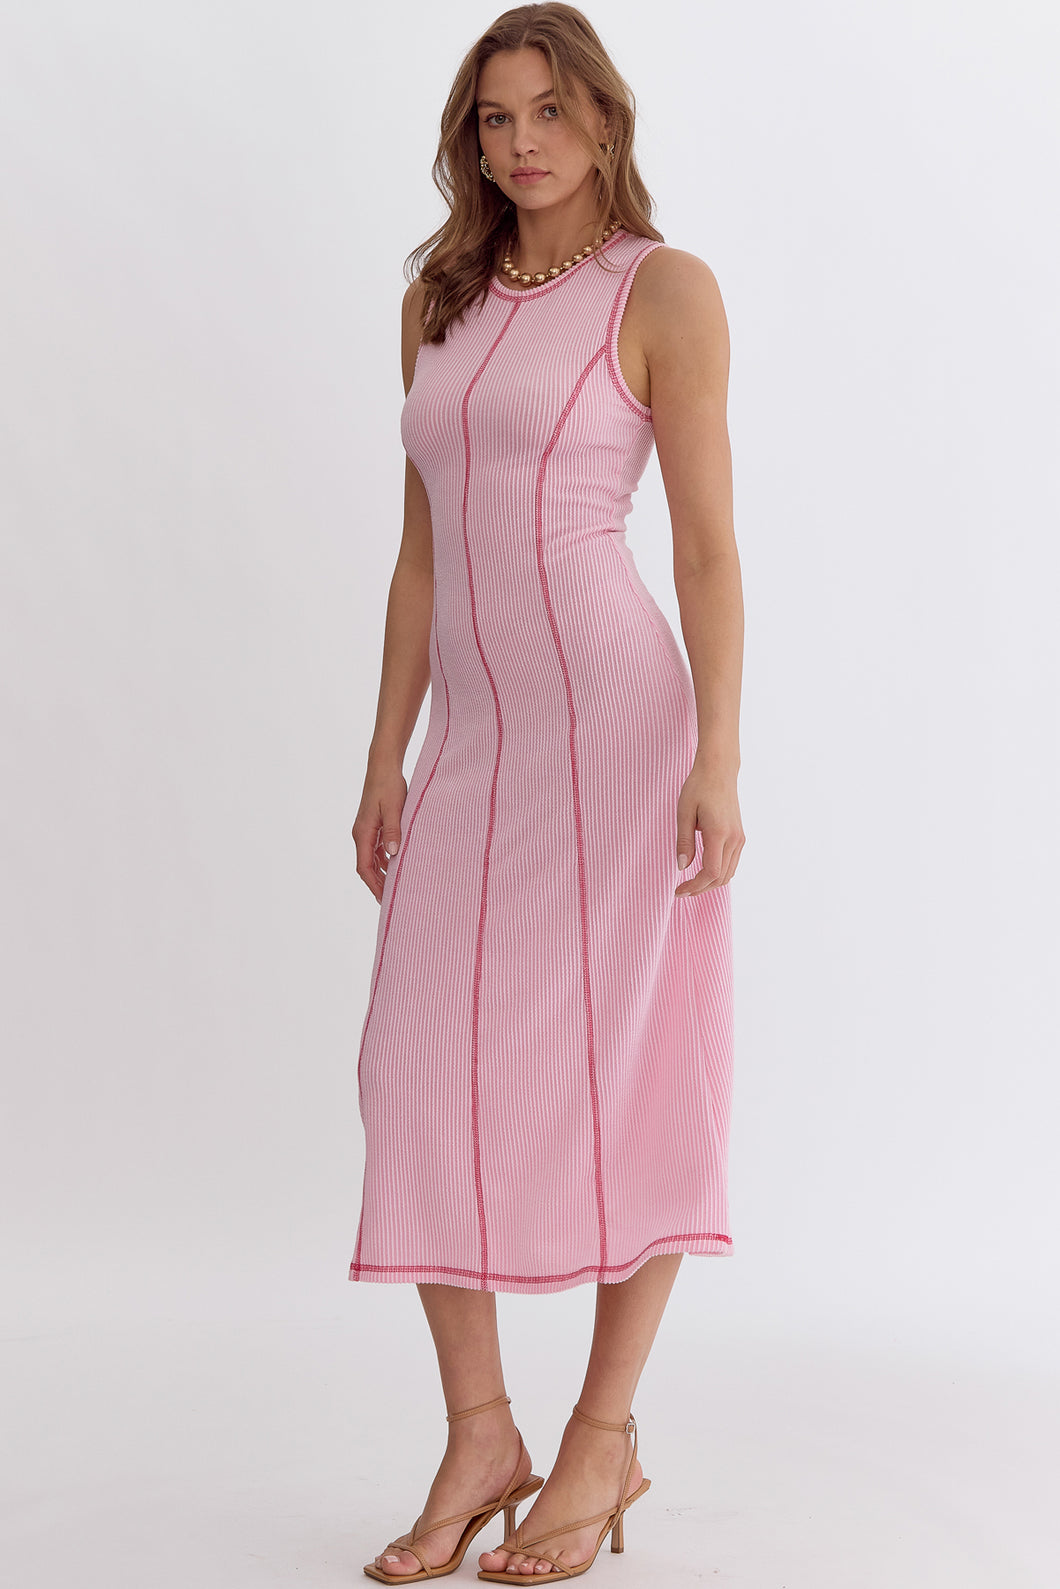 Blurred Lines Midi Dress Pink